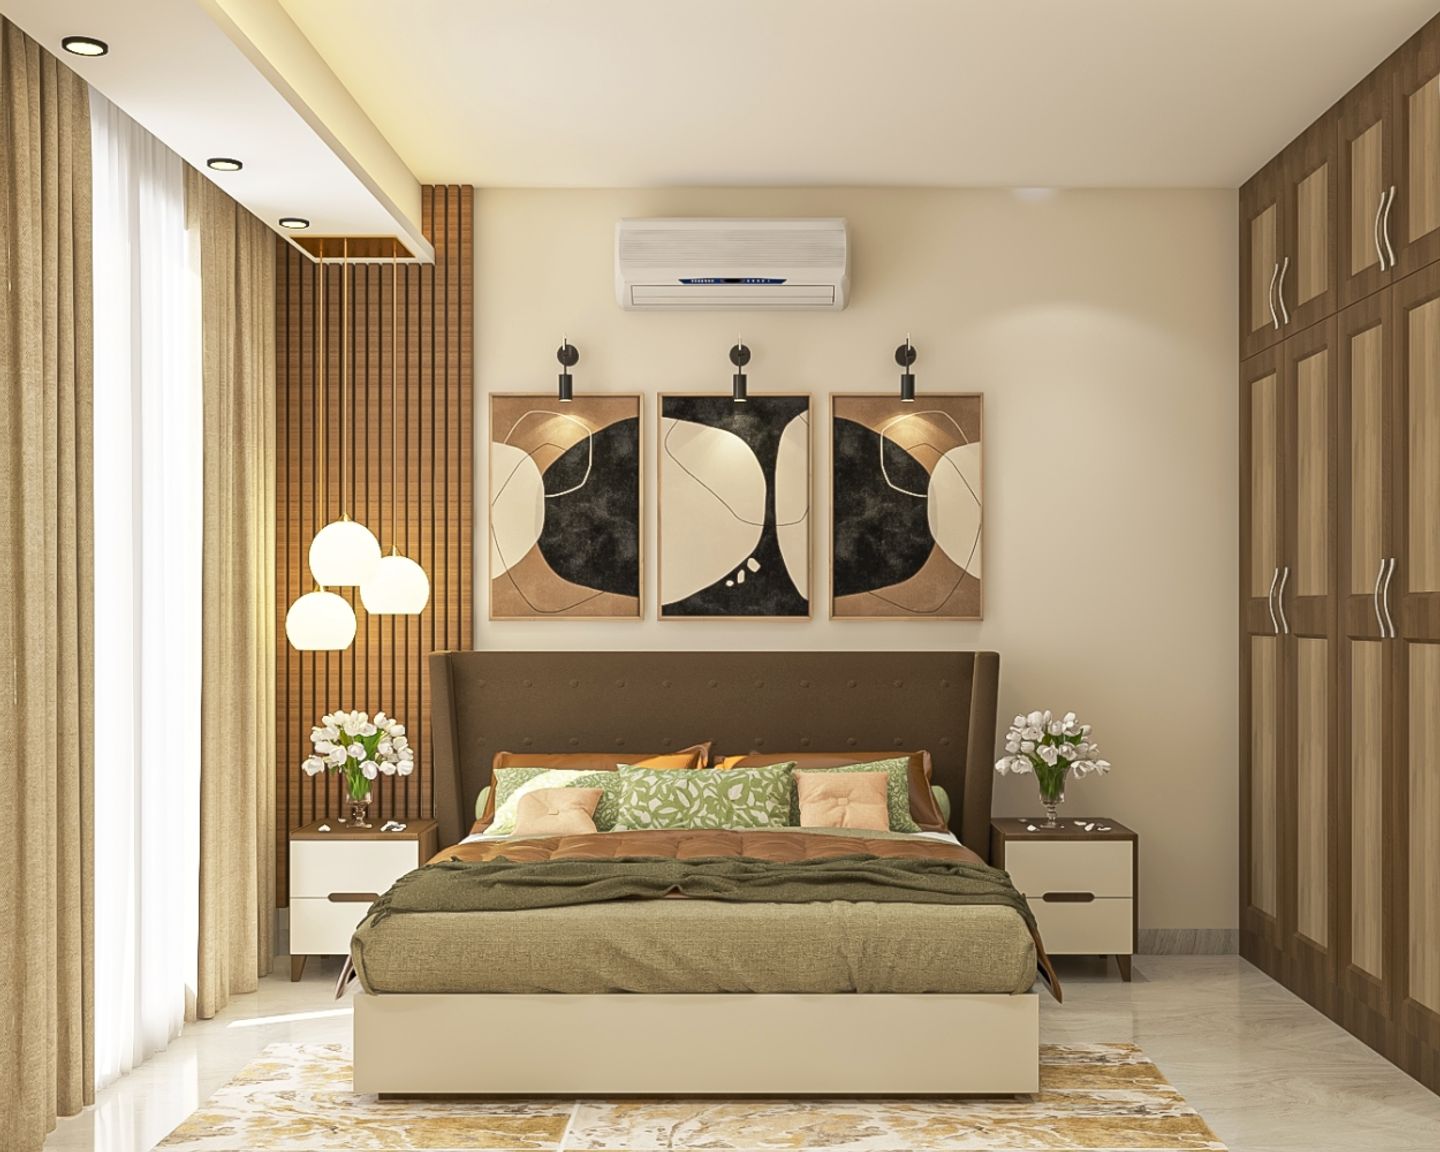 Brown And Beige Master Bedroom Design With 4-Door Swing Wardrobe - Livspace